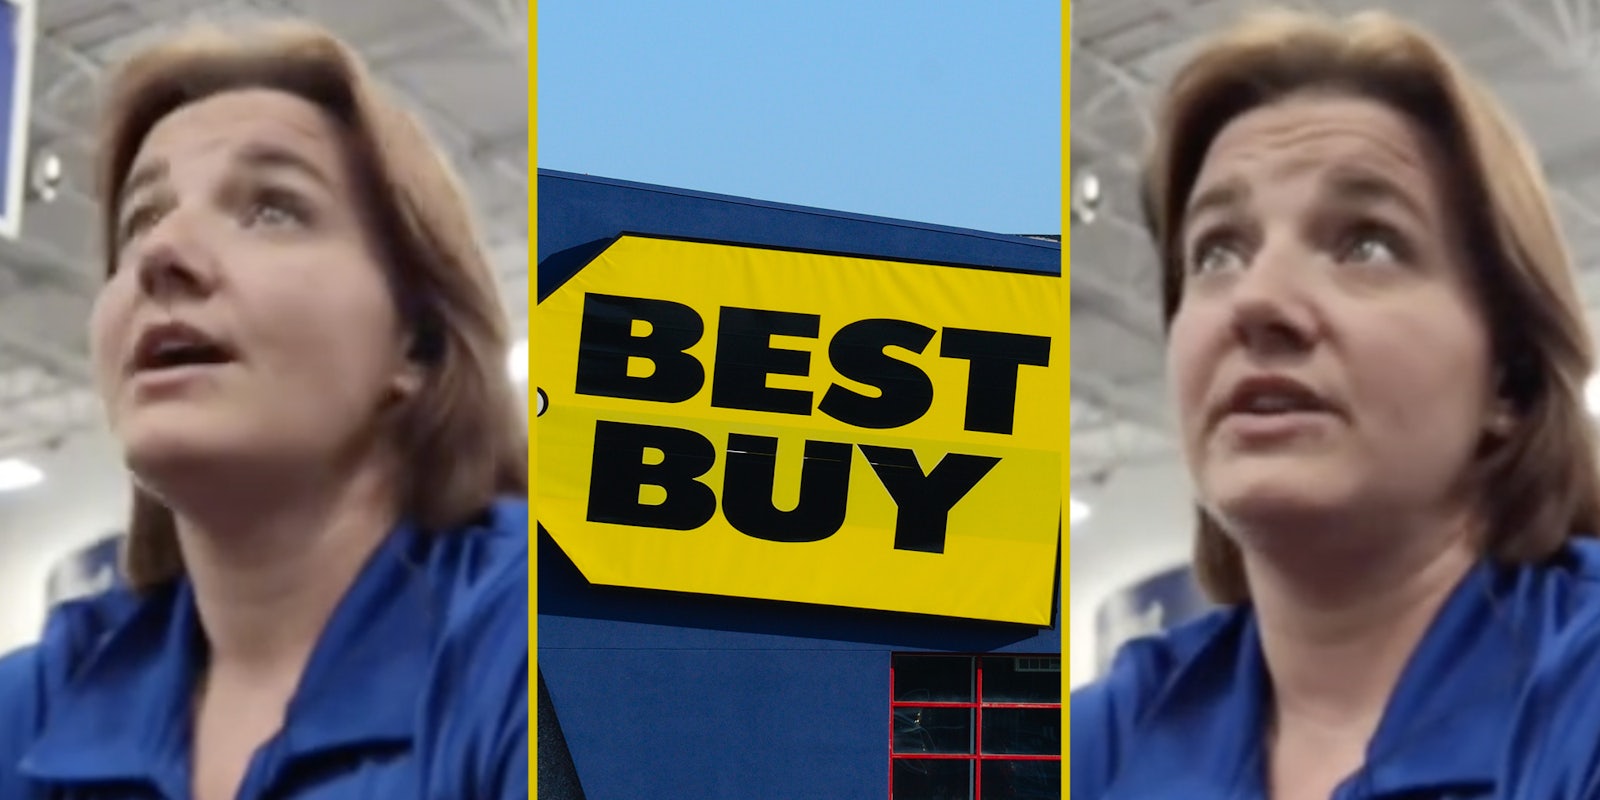 Best Buy employee(l+r), Best Buy sign(c)